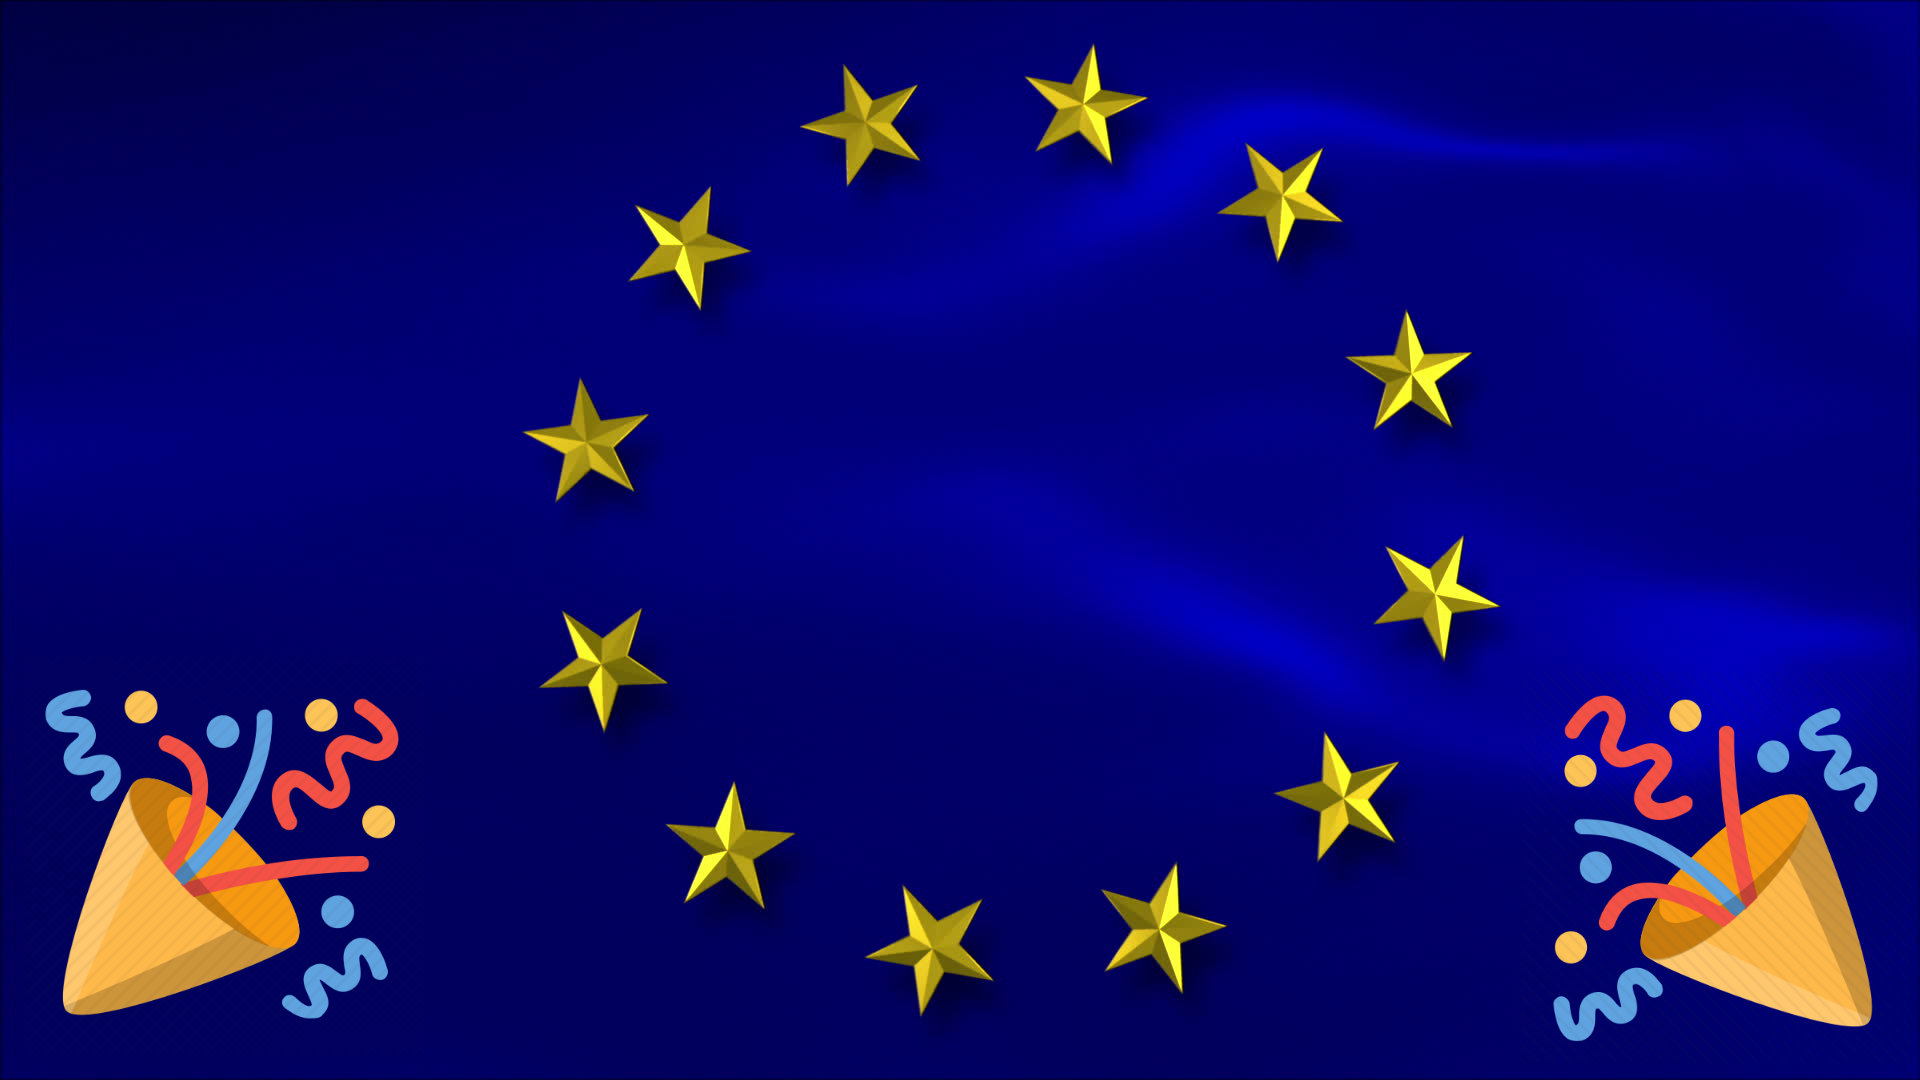 Celebrations as EU parliament votes to adopt controversial copyright reform